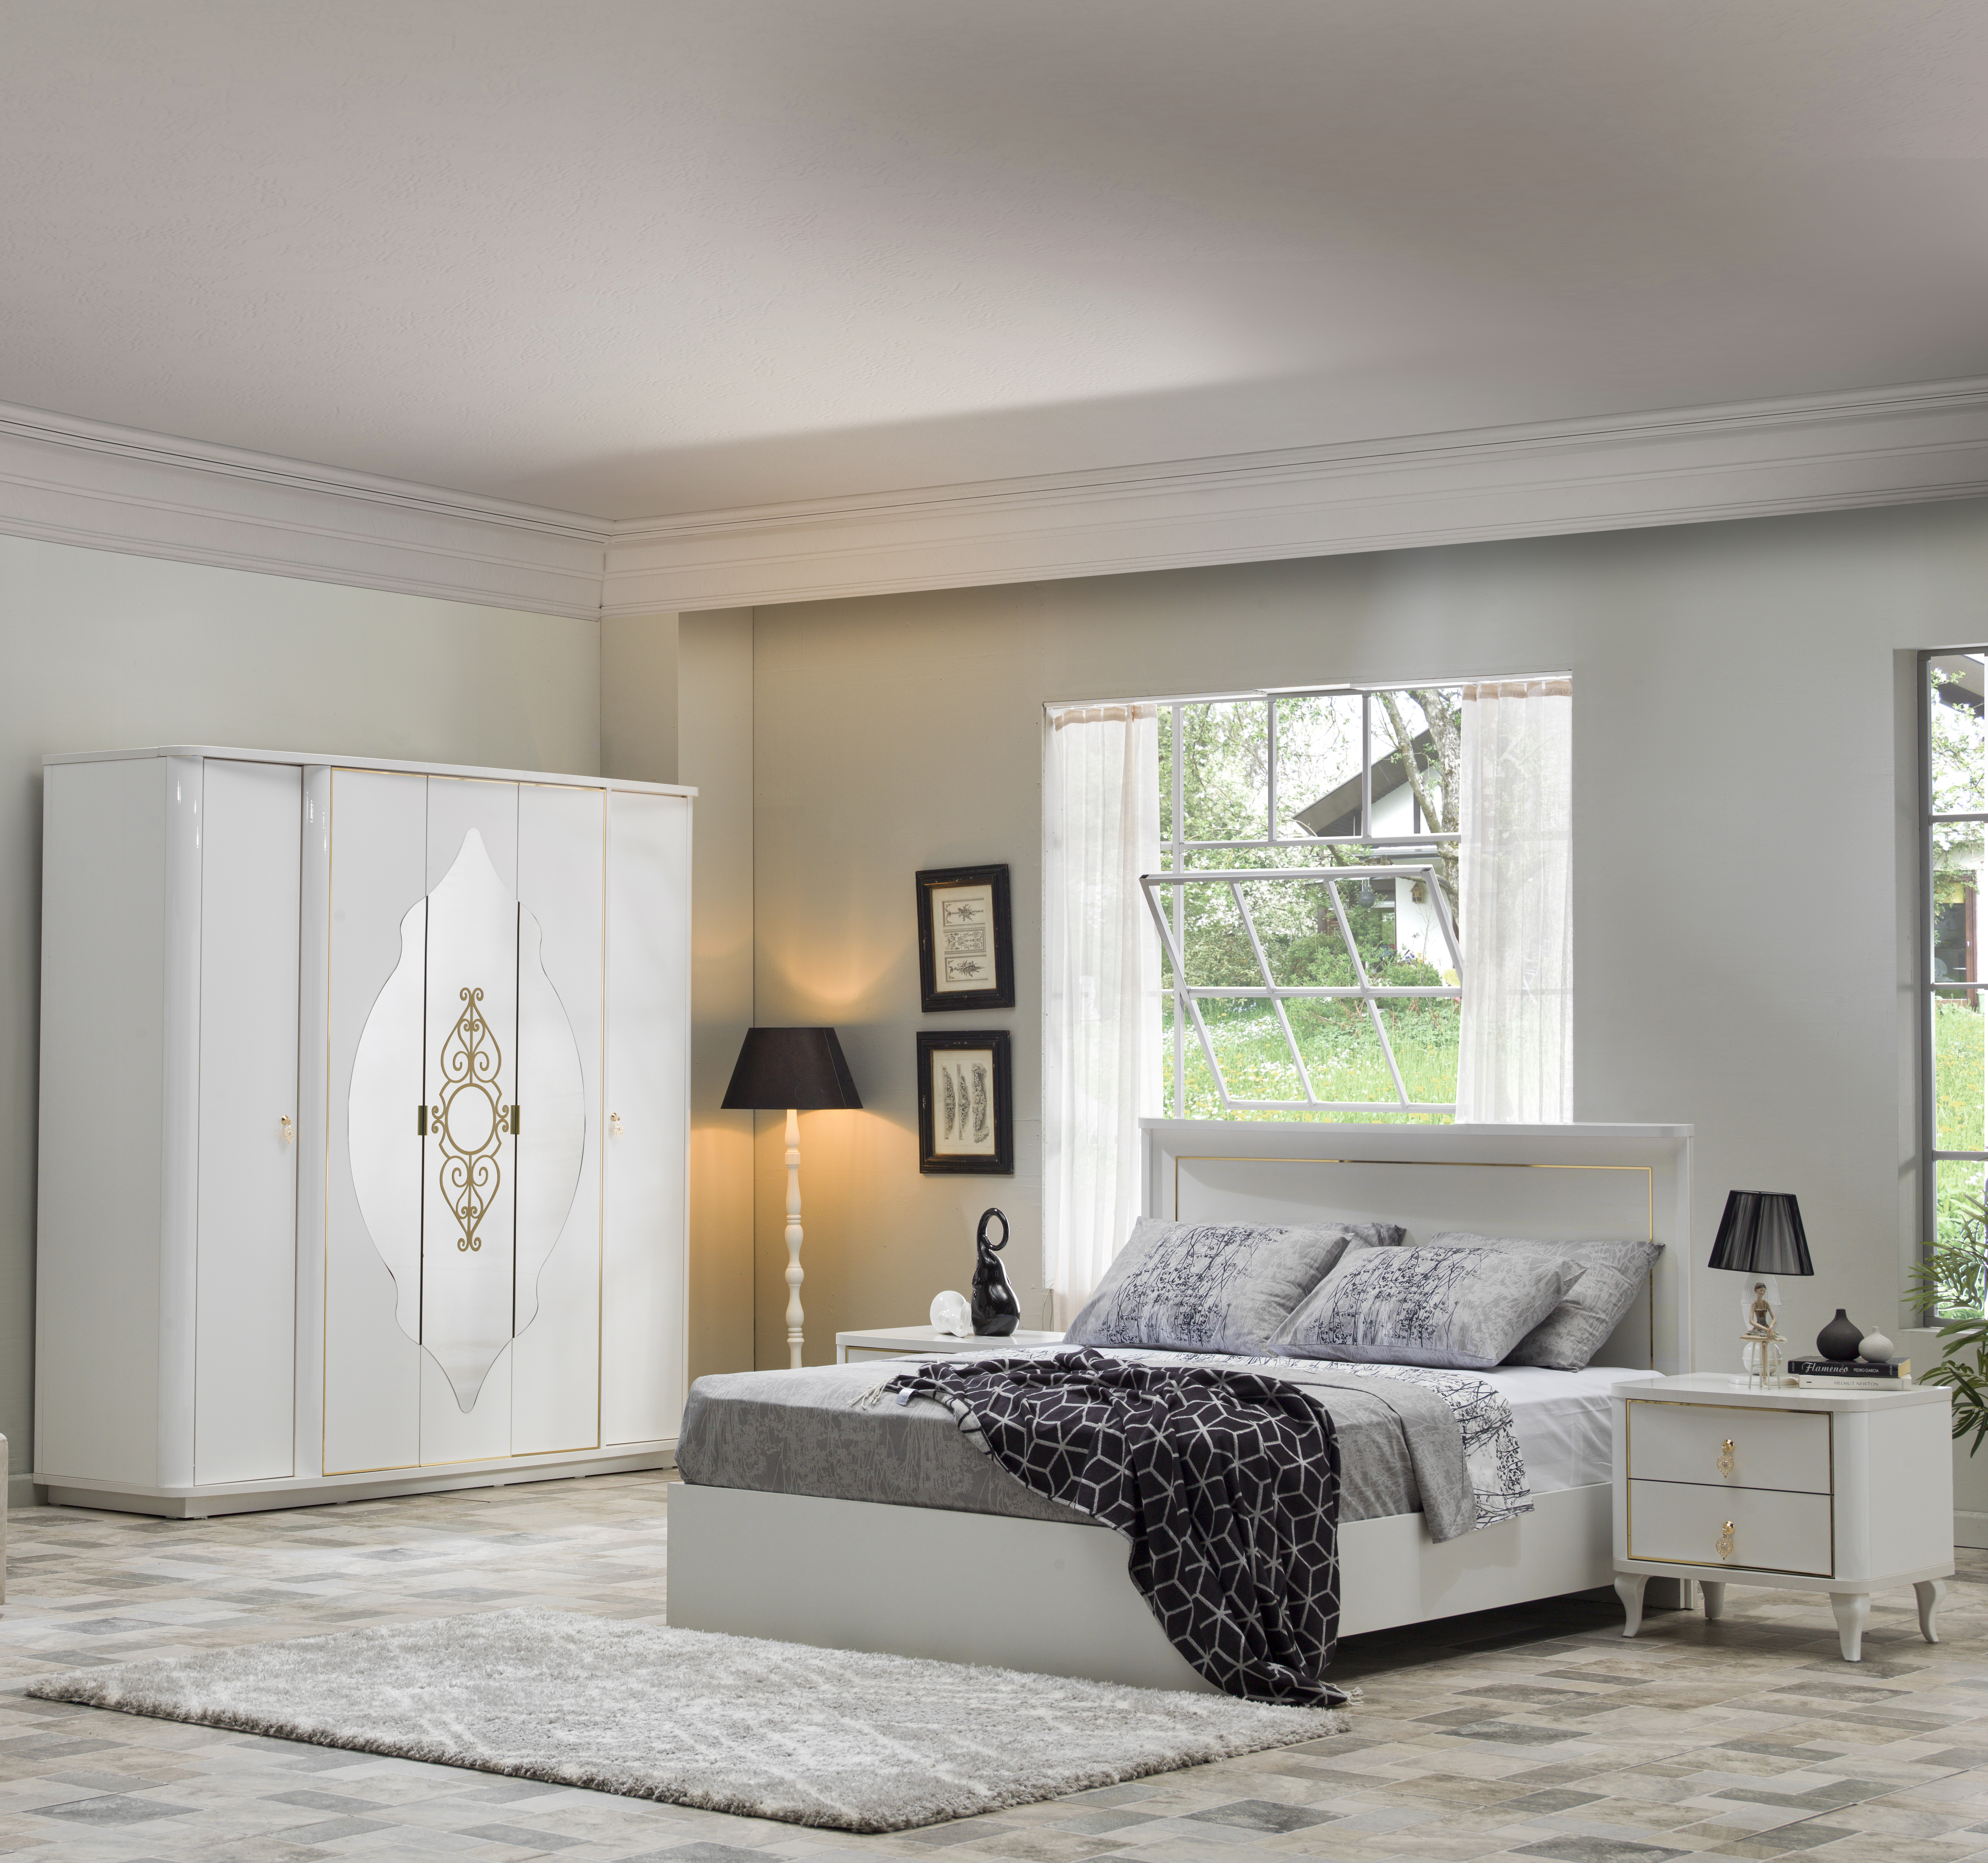 Кровать Bellona Legenda двуспальная 160x200 см, цвет: белый (LEGN-В-26-160) остаткиLEGN-В-26-160